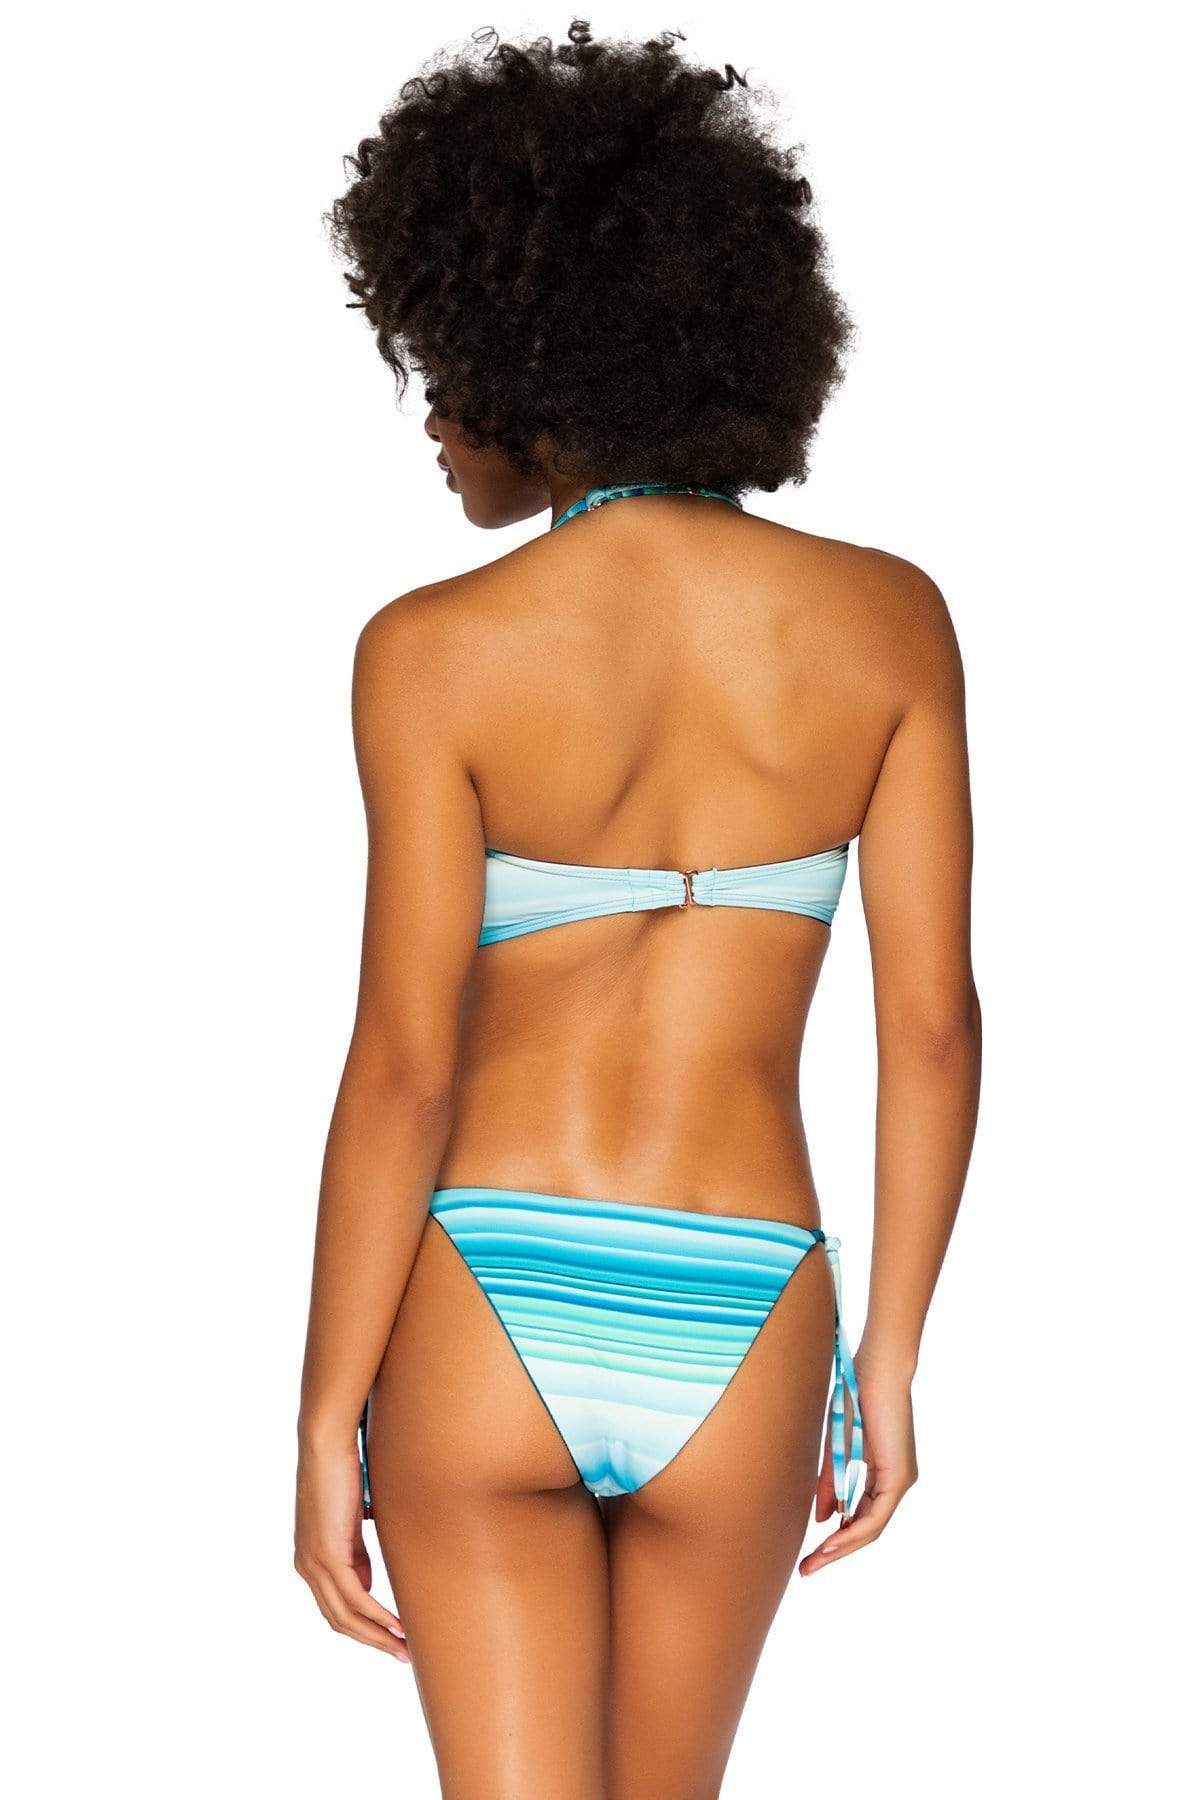 Bestswimwear -  Swim Systems Ocean Oasis Holly Tie Side